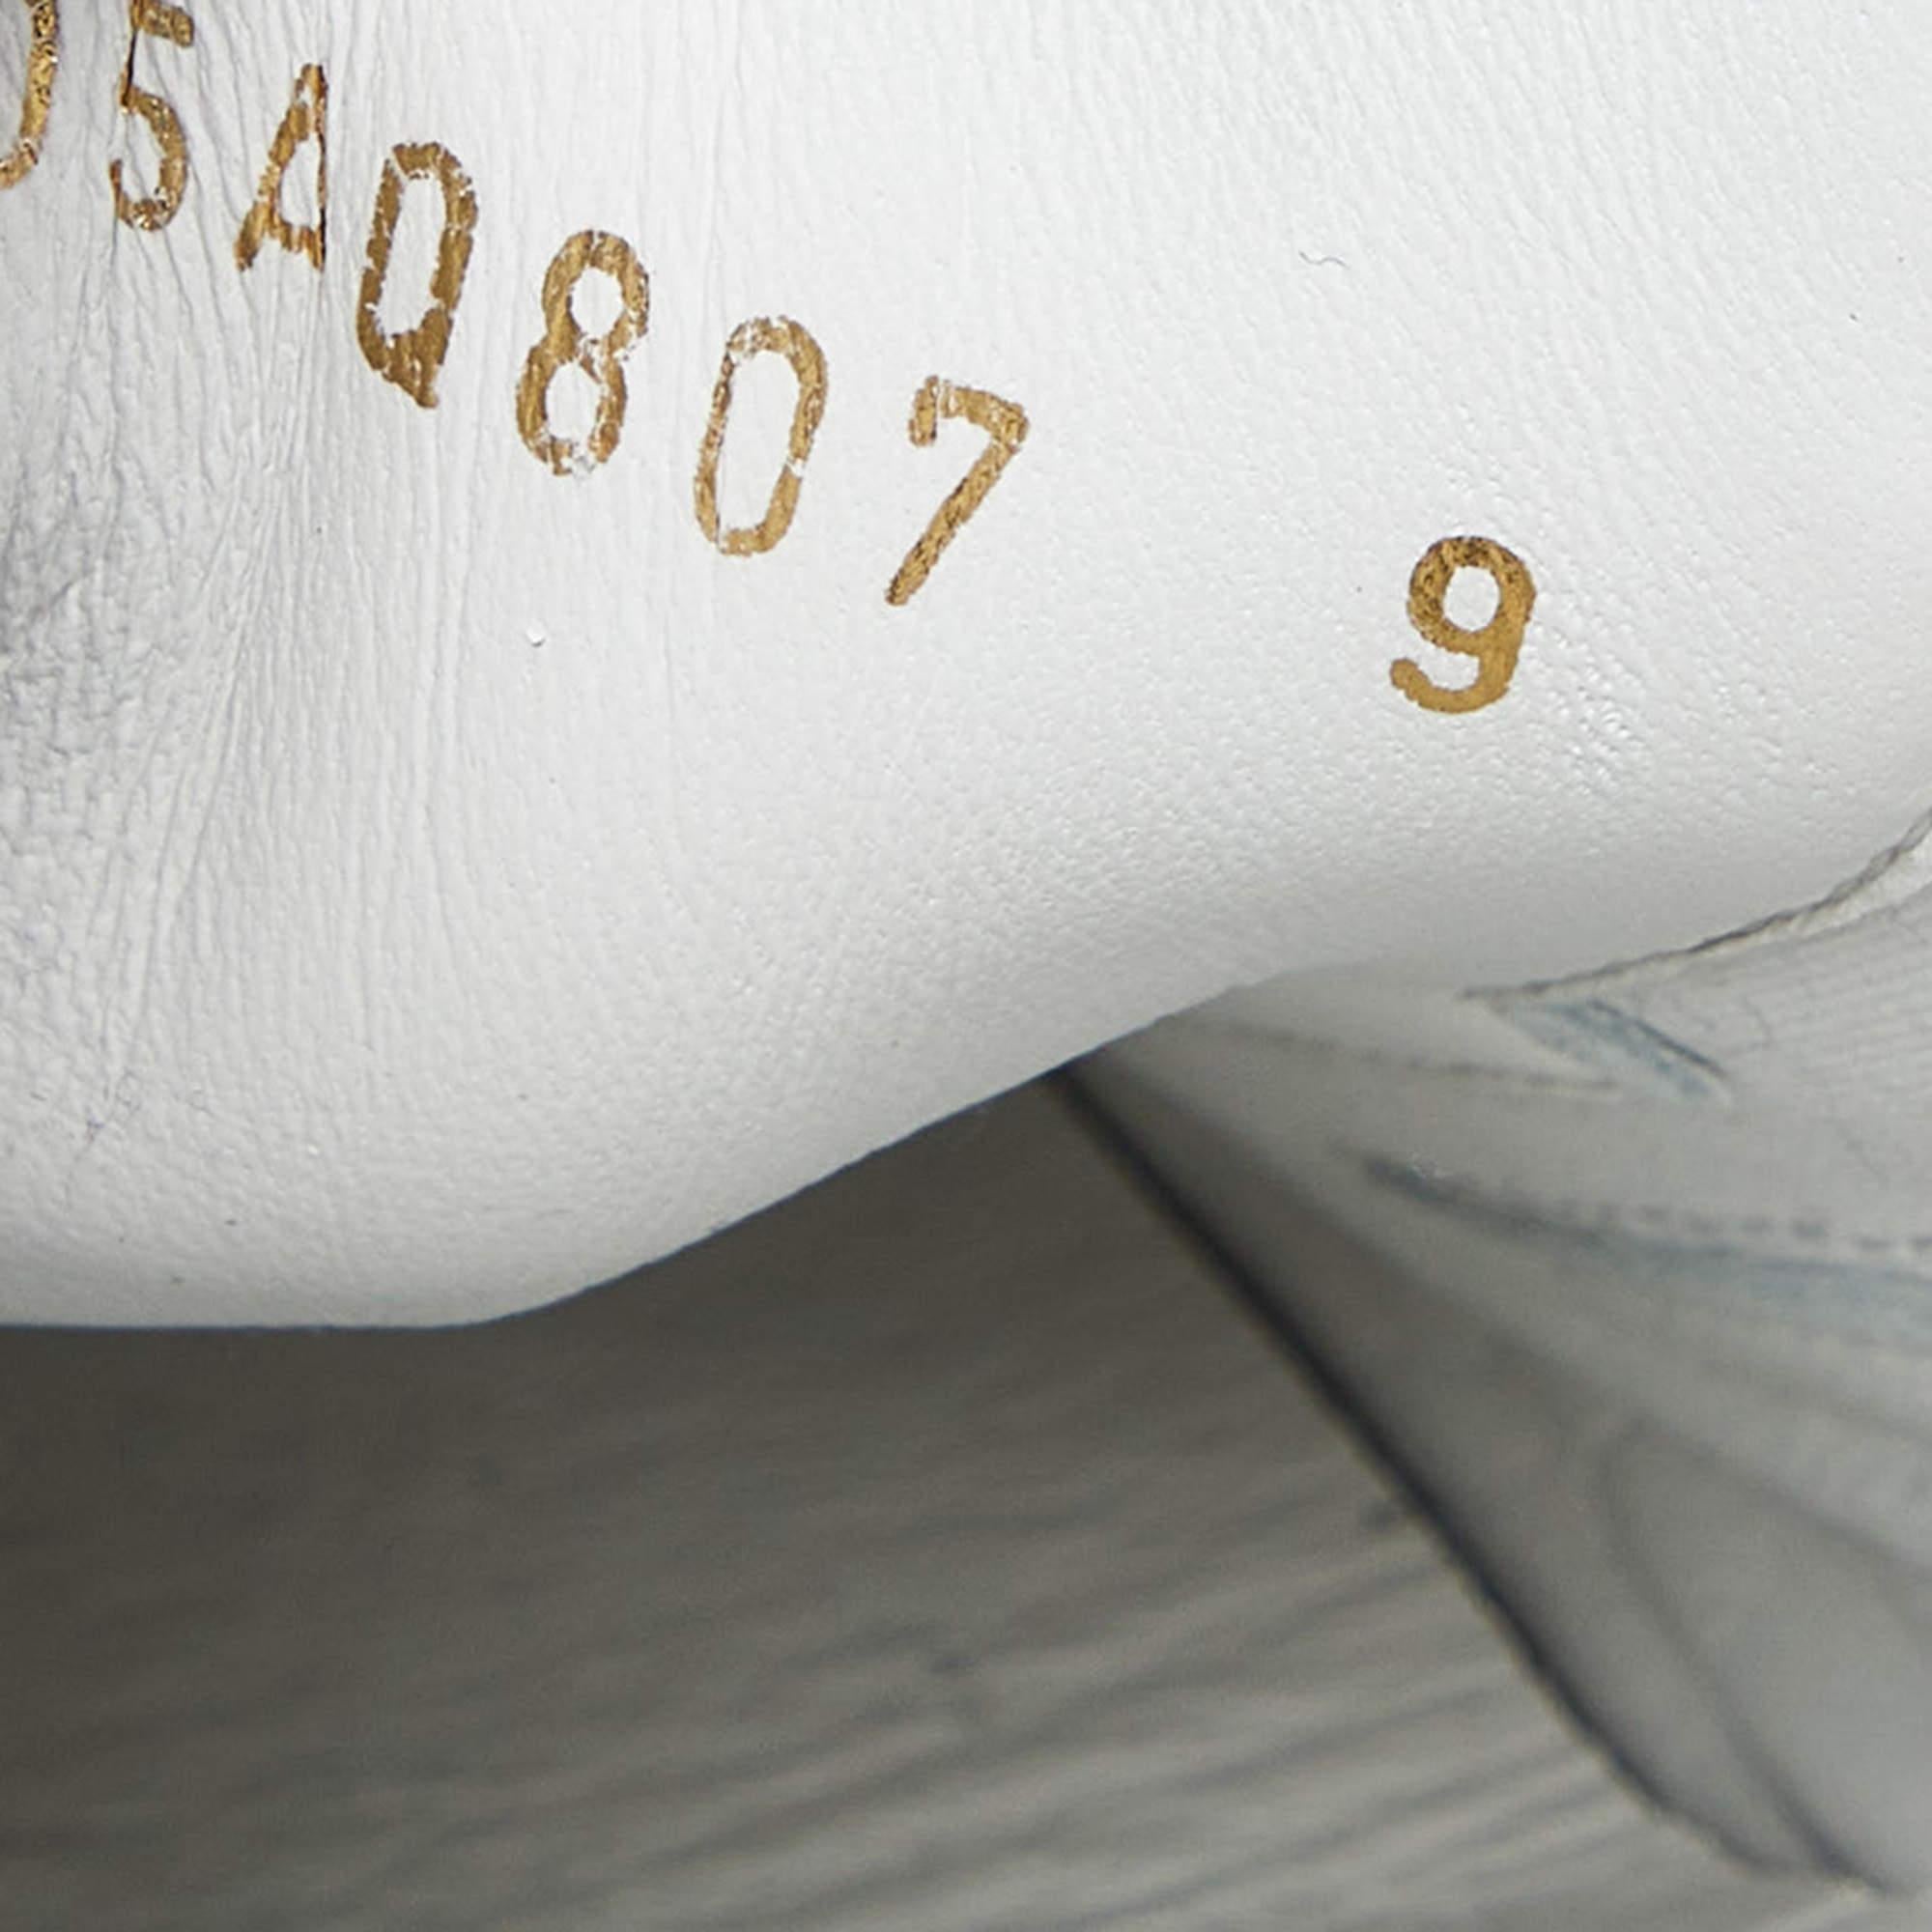 Dolce & Gabbana Tricolor Leather Graffiti Print Portofino Sneakers Size 43 4